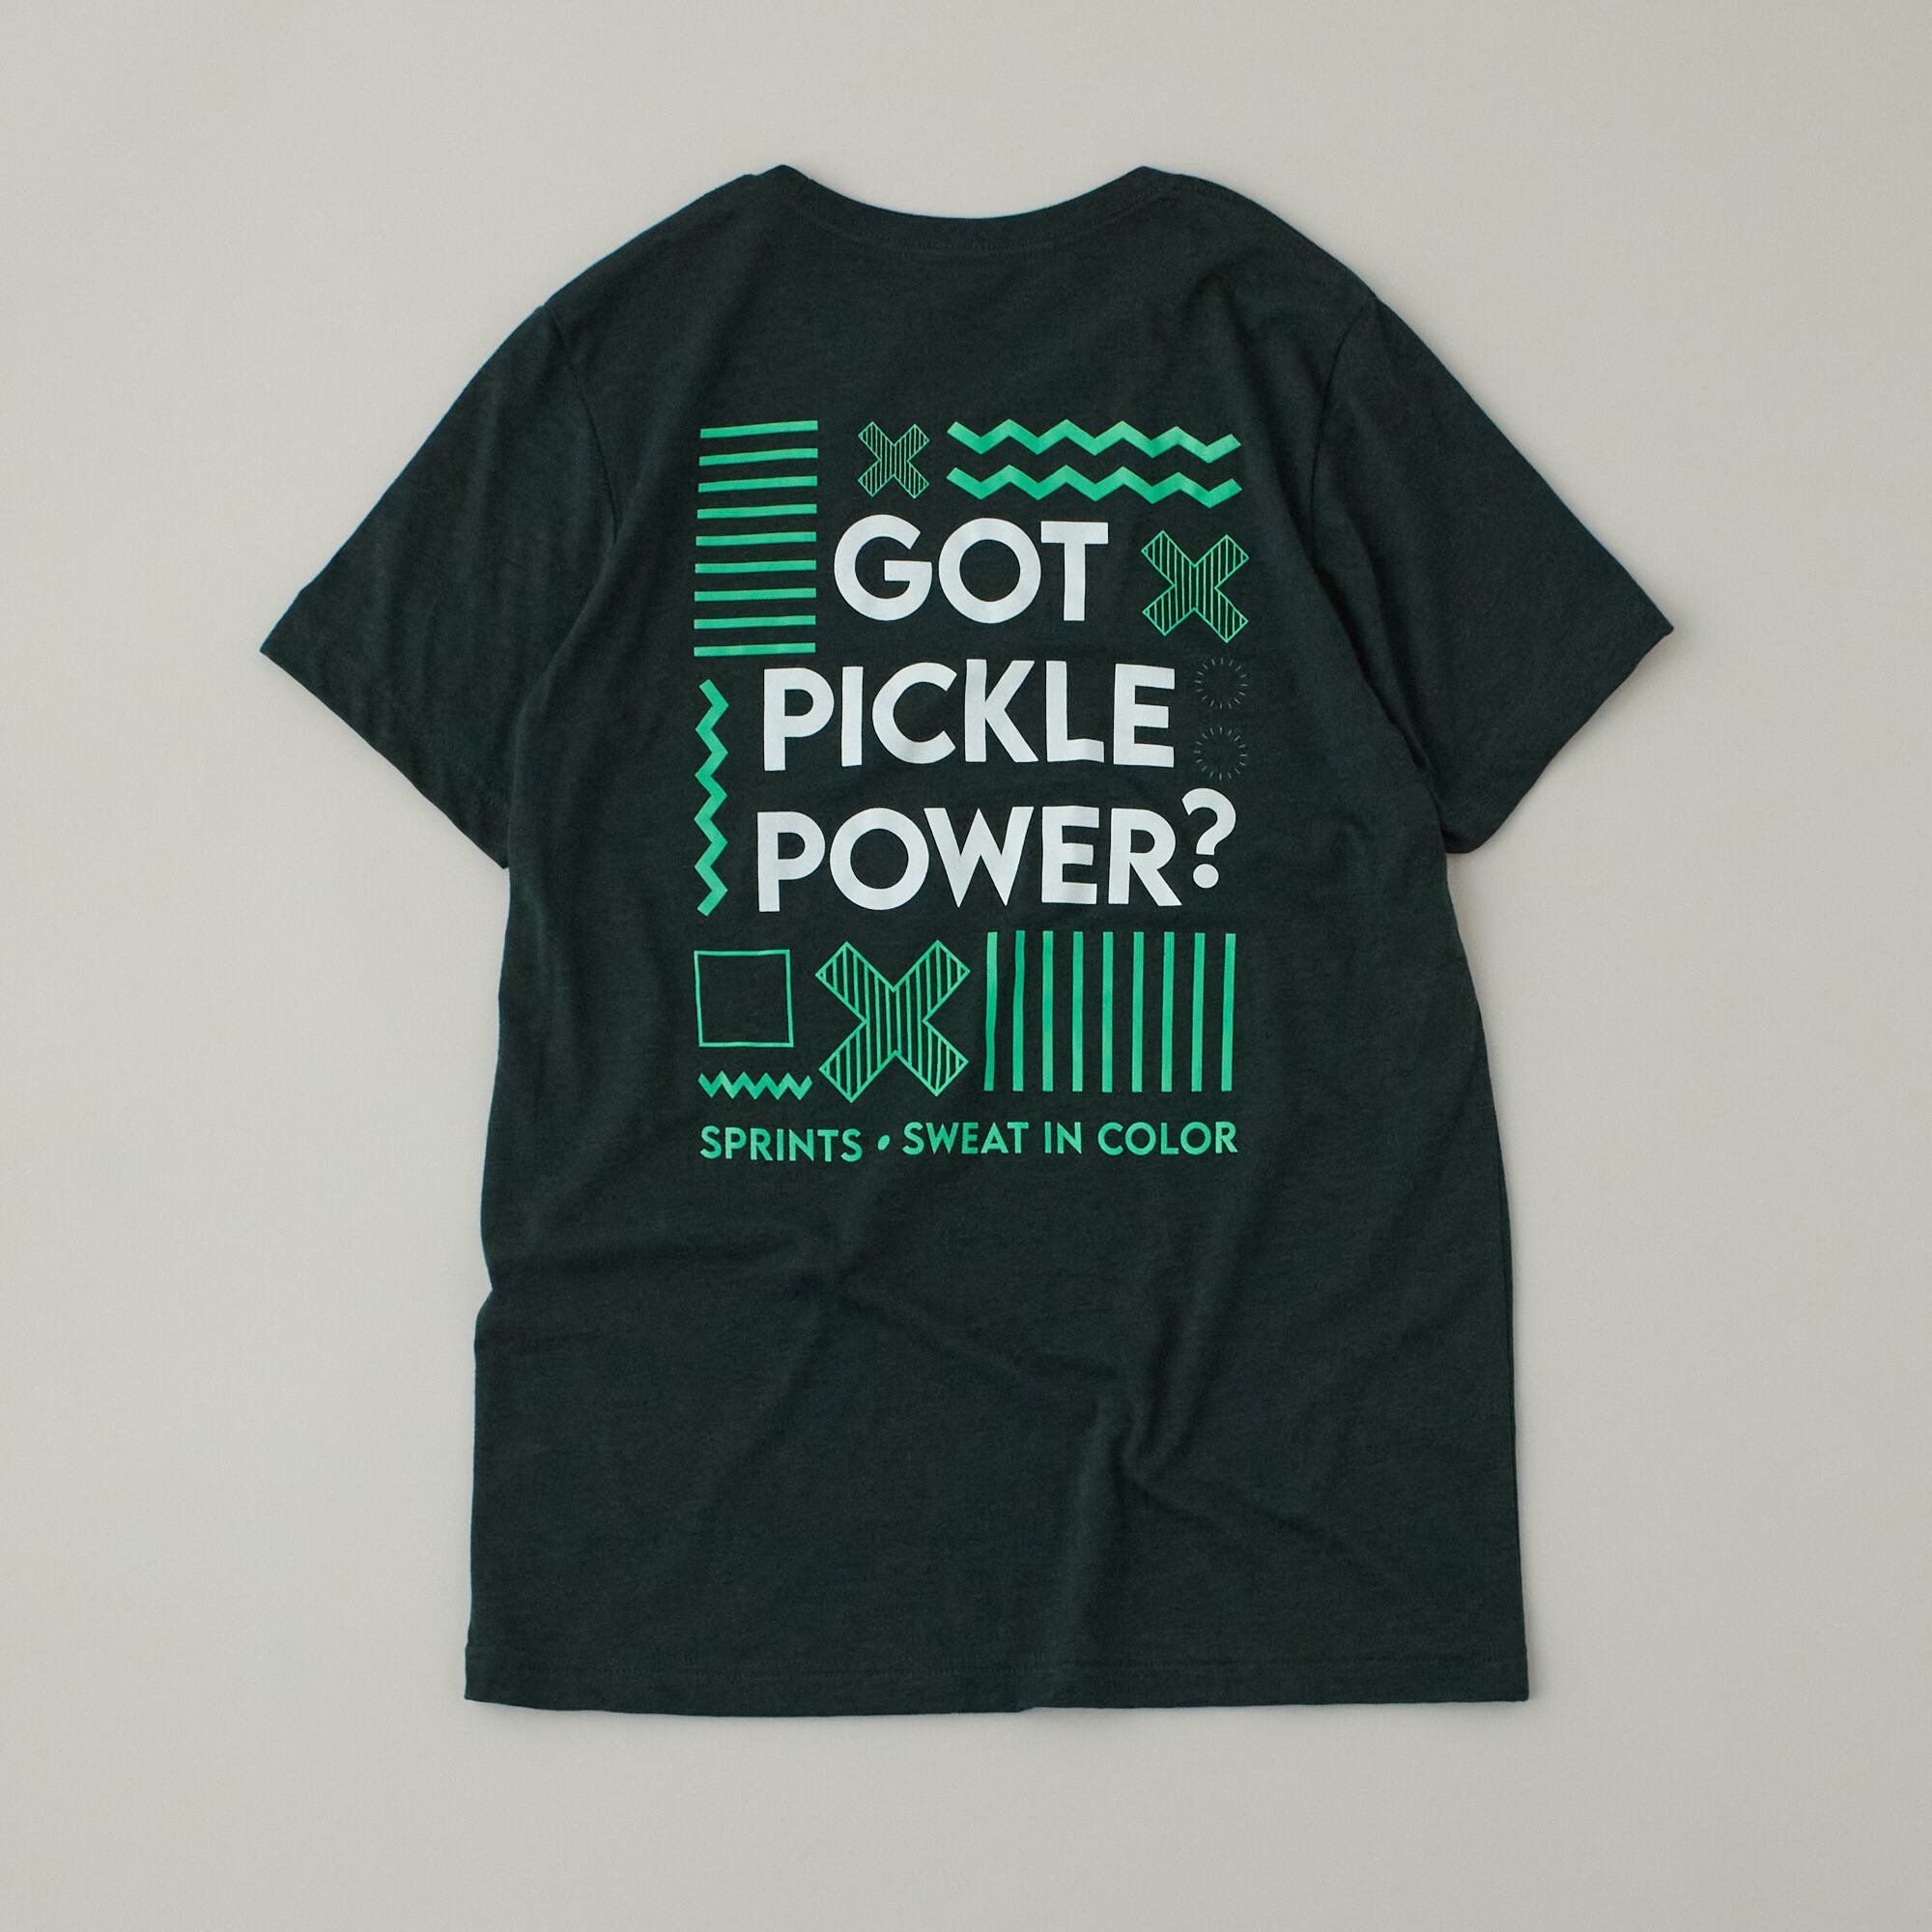 SPRINTS(スプリンツ) Pickle Power T-shirt メンズ・ウィメンズTシャツ